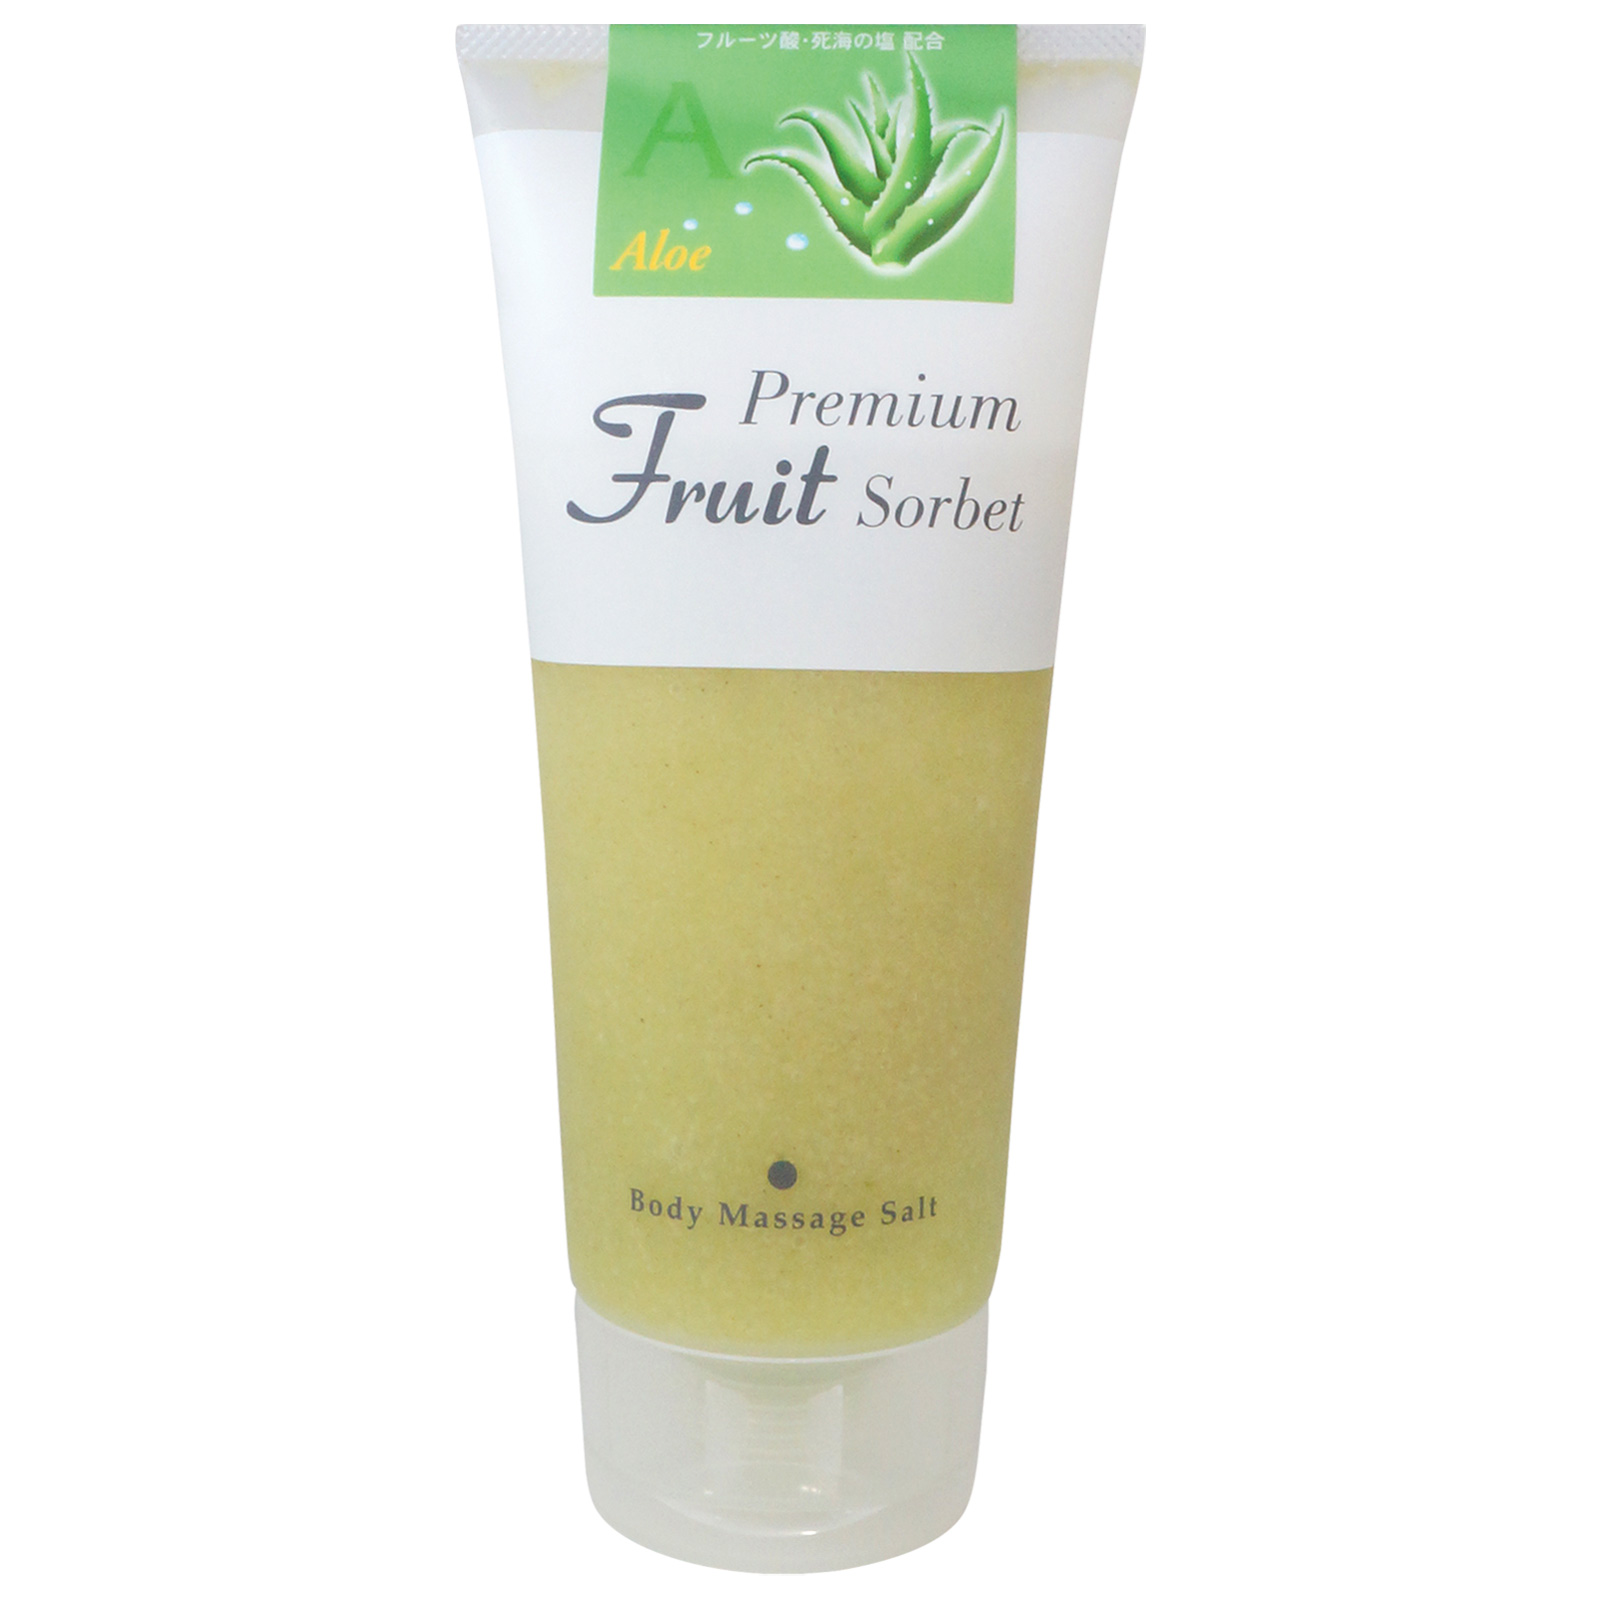 Cosmepro Premium Fruit Sorbet Body Massage Salt Aloe. Премиальный фруктовый скраб-сорбет для тела на основе соли «Алоэ» Космепро, 500 г